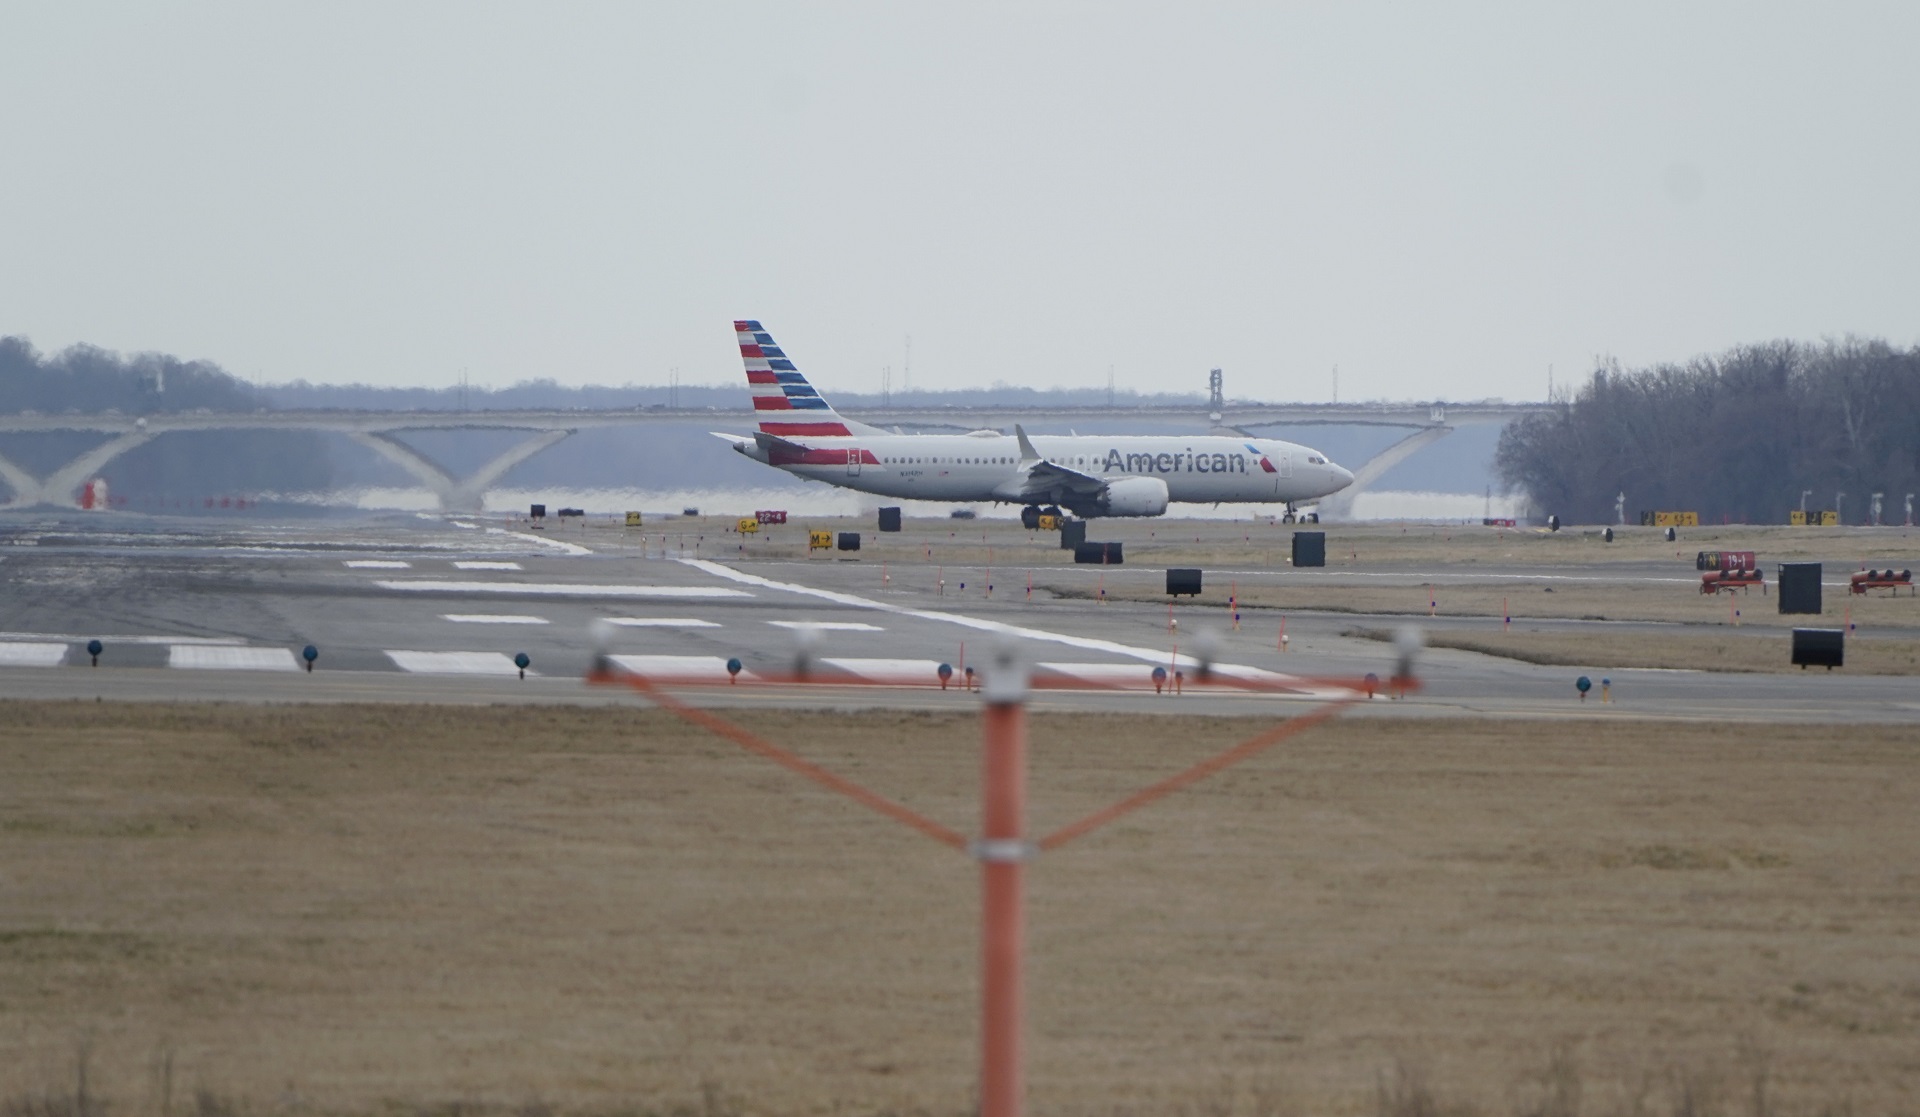 طائرة من طراز بوينج ماكس 8 - 737 تابعة للخطوط الجوية الأميركية بعد هبوطها في مطار ريجان في الولايات المتحدة. 13 مارس 2019. جوشوا روبرتس / رويترز